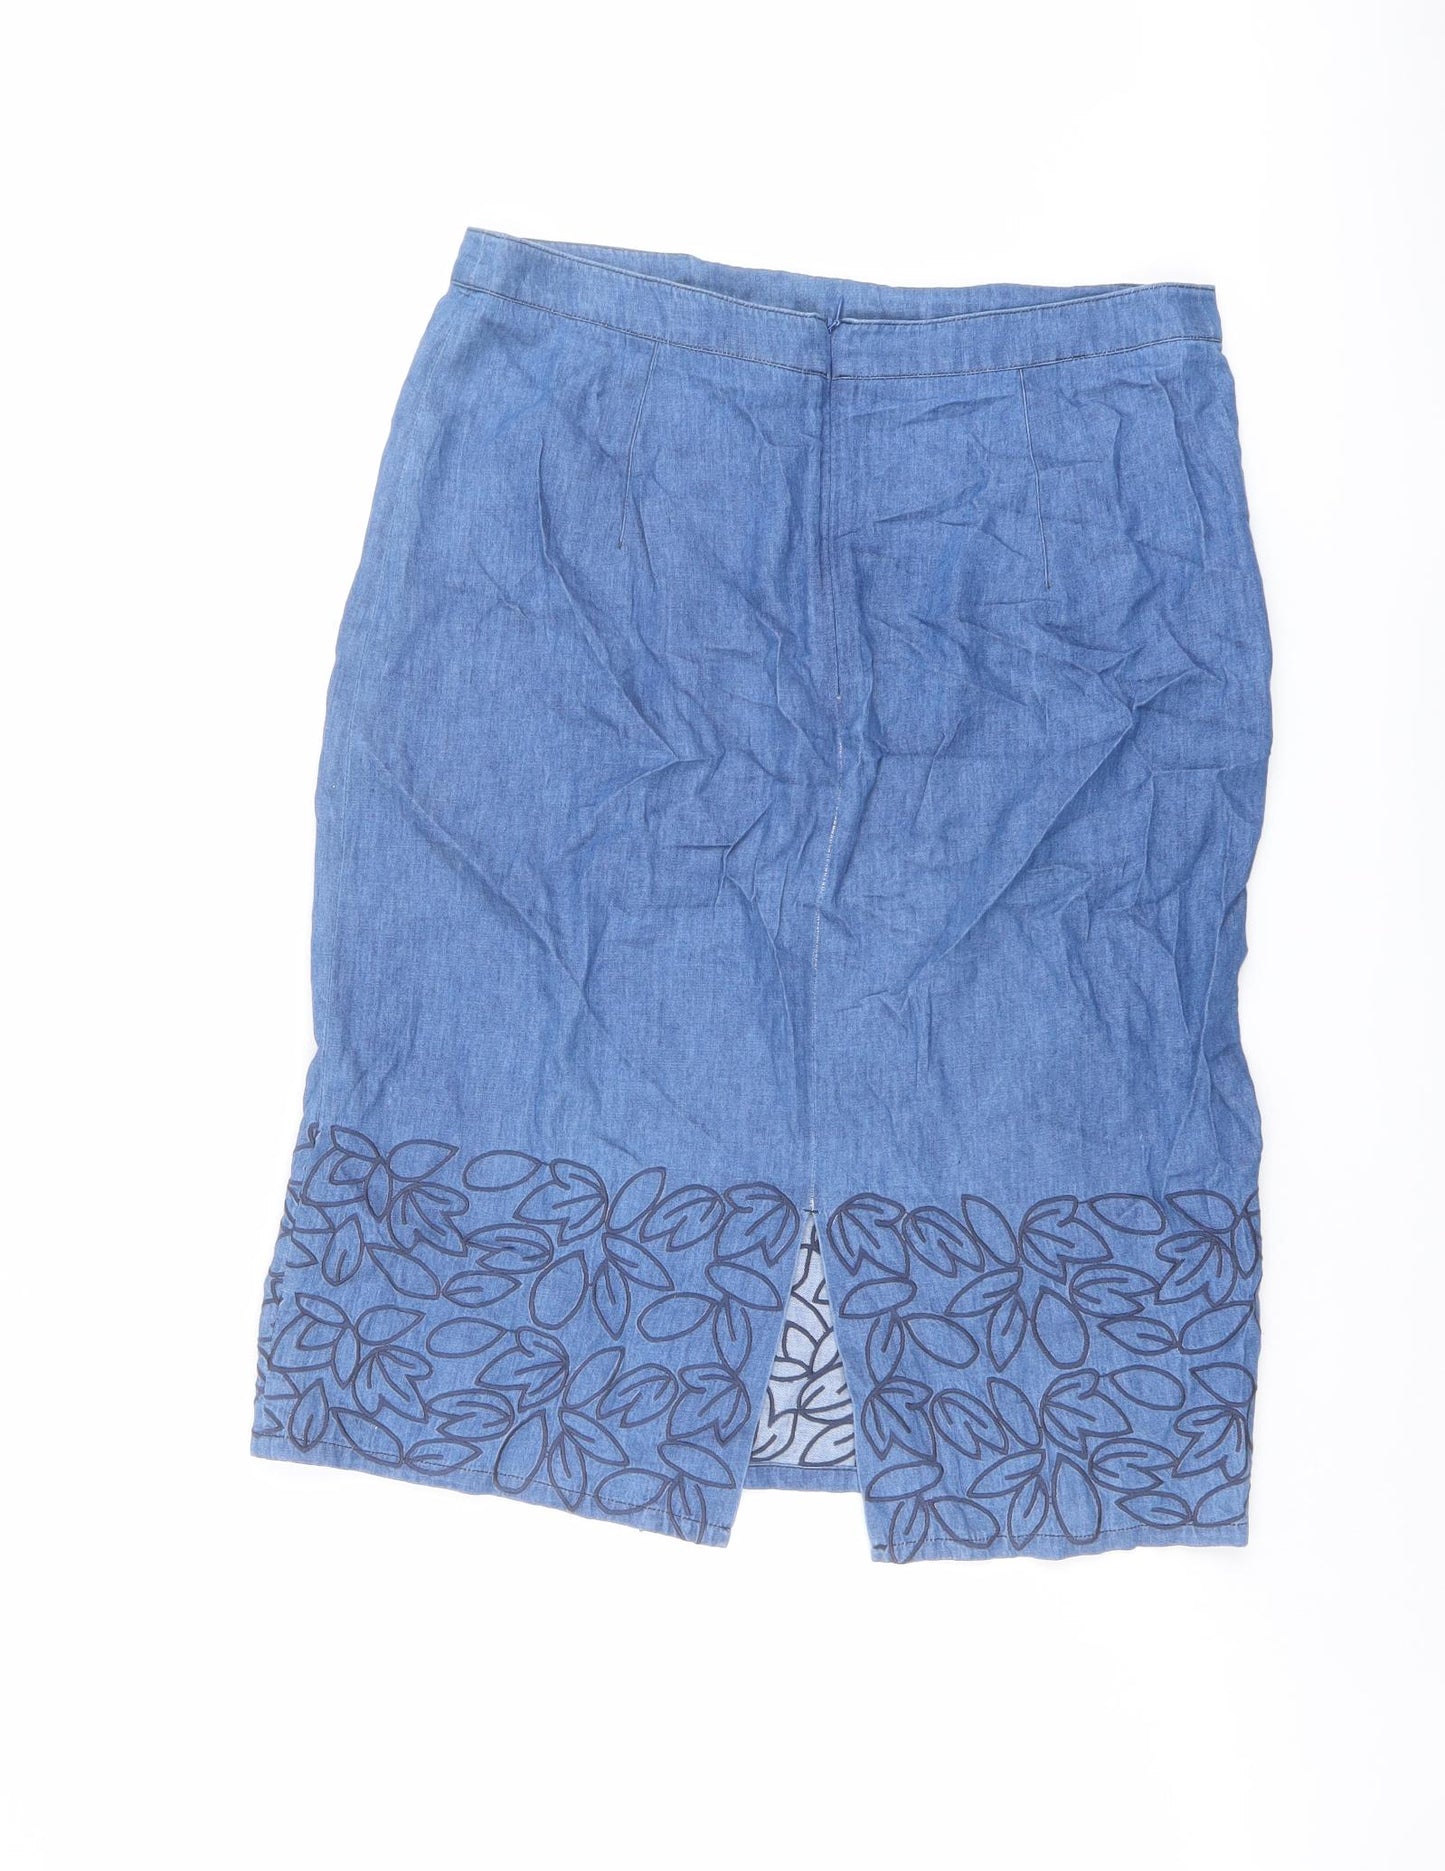 Dickins & Jones Womens Blue Floral Cotton A-Line Skirt Size 12 Zip